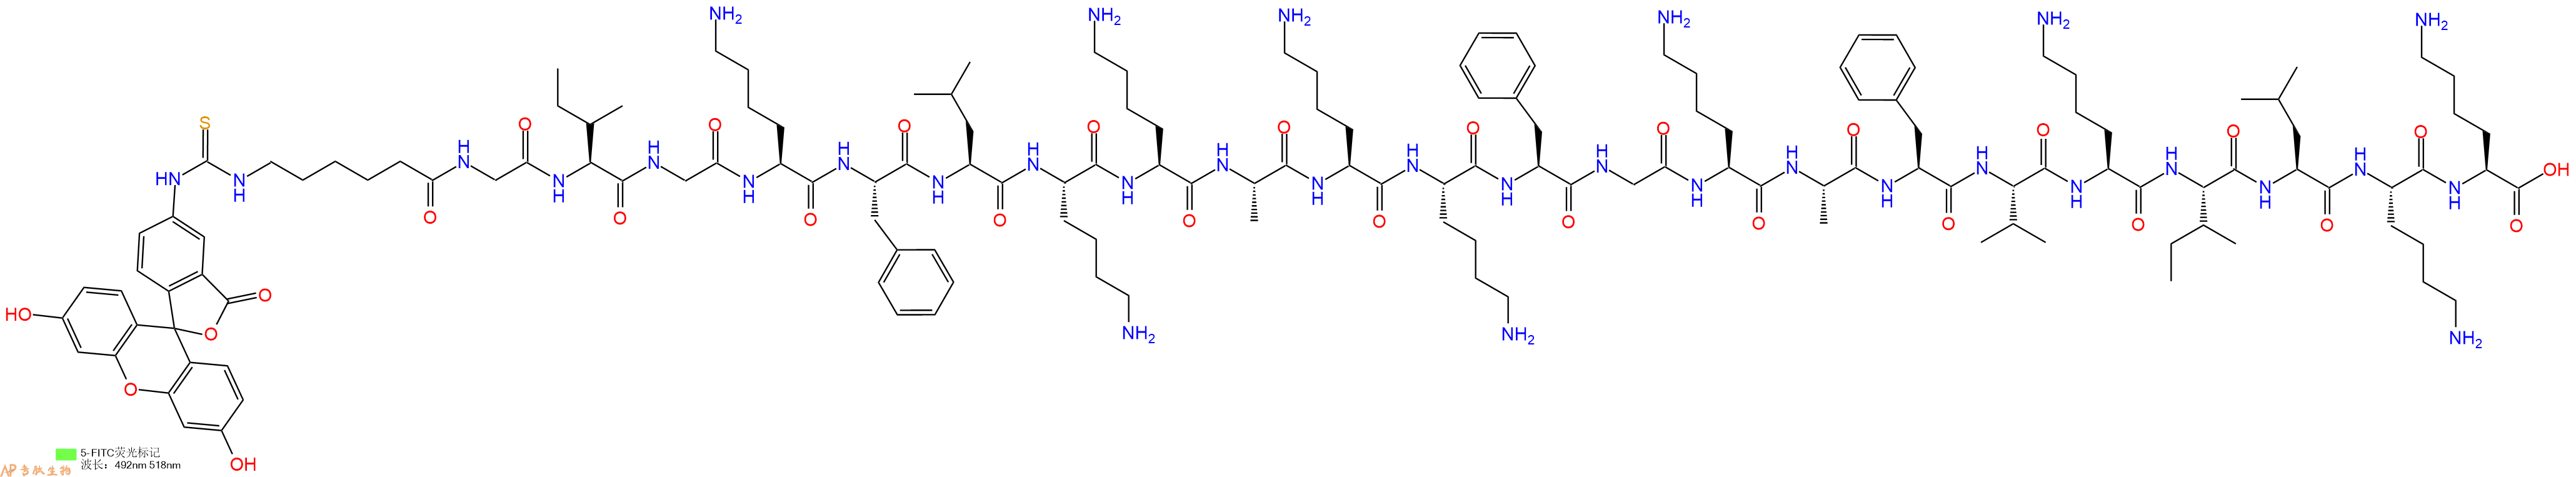 专肽生物产品5FITC-Ahx-Gly-Ile-Gly-Lys-Phe-Leu-Lys-Lys-Ala-Lys-